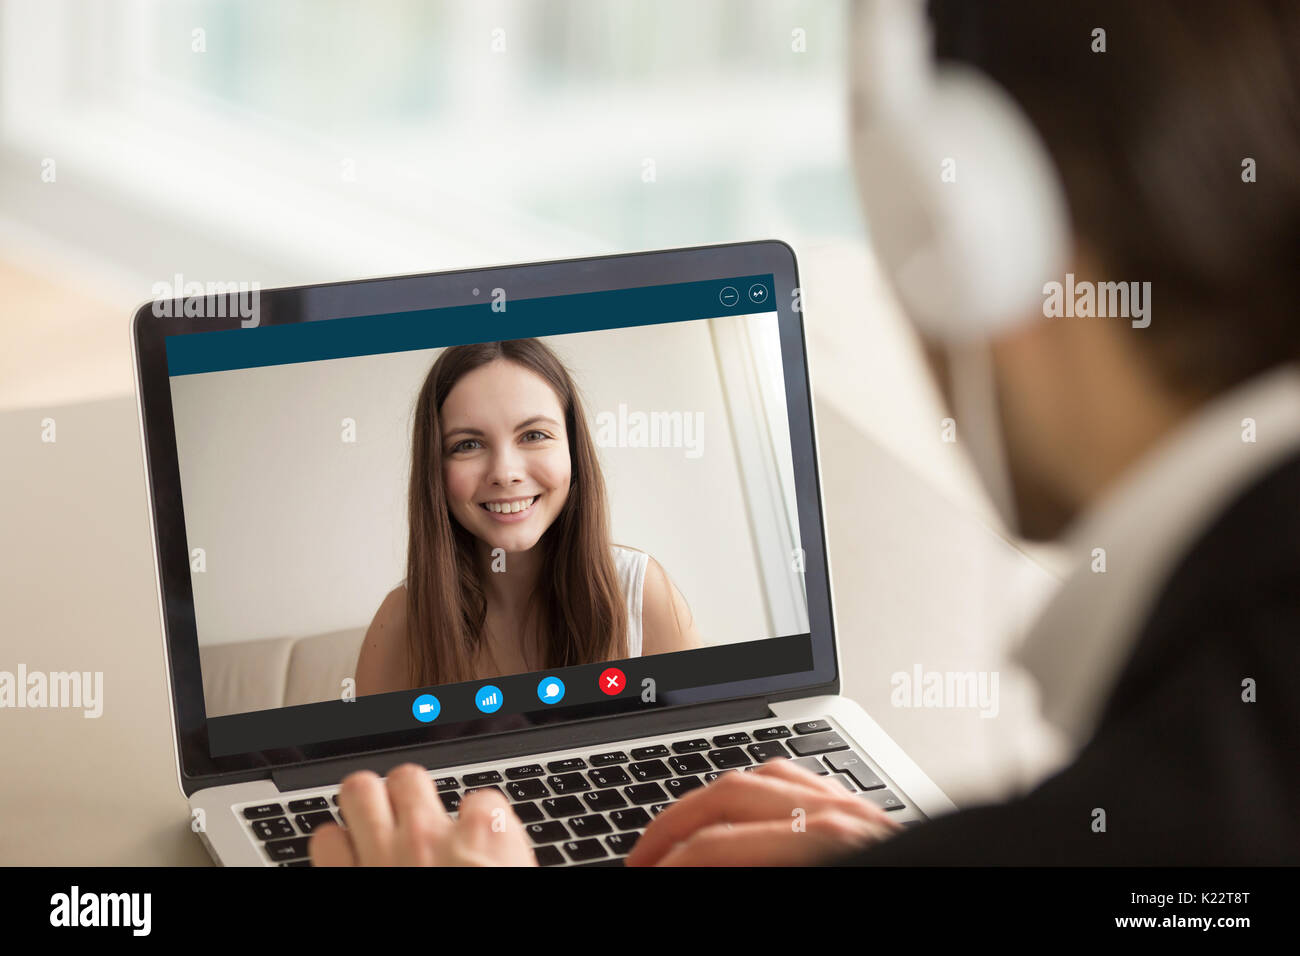 Smiling girl sur appel vidéo avec Guy, chat virtuel en ligne Banque D'Images